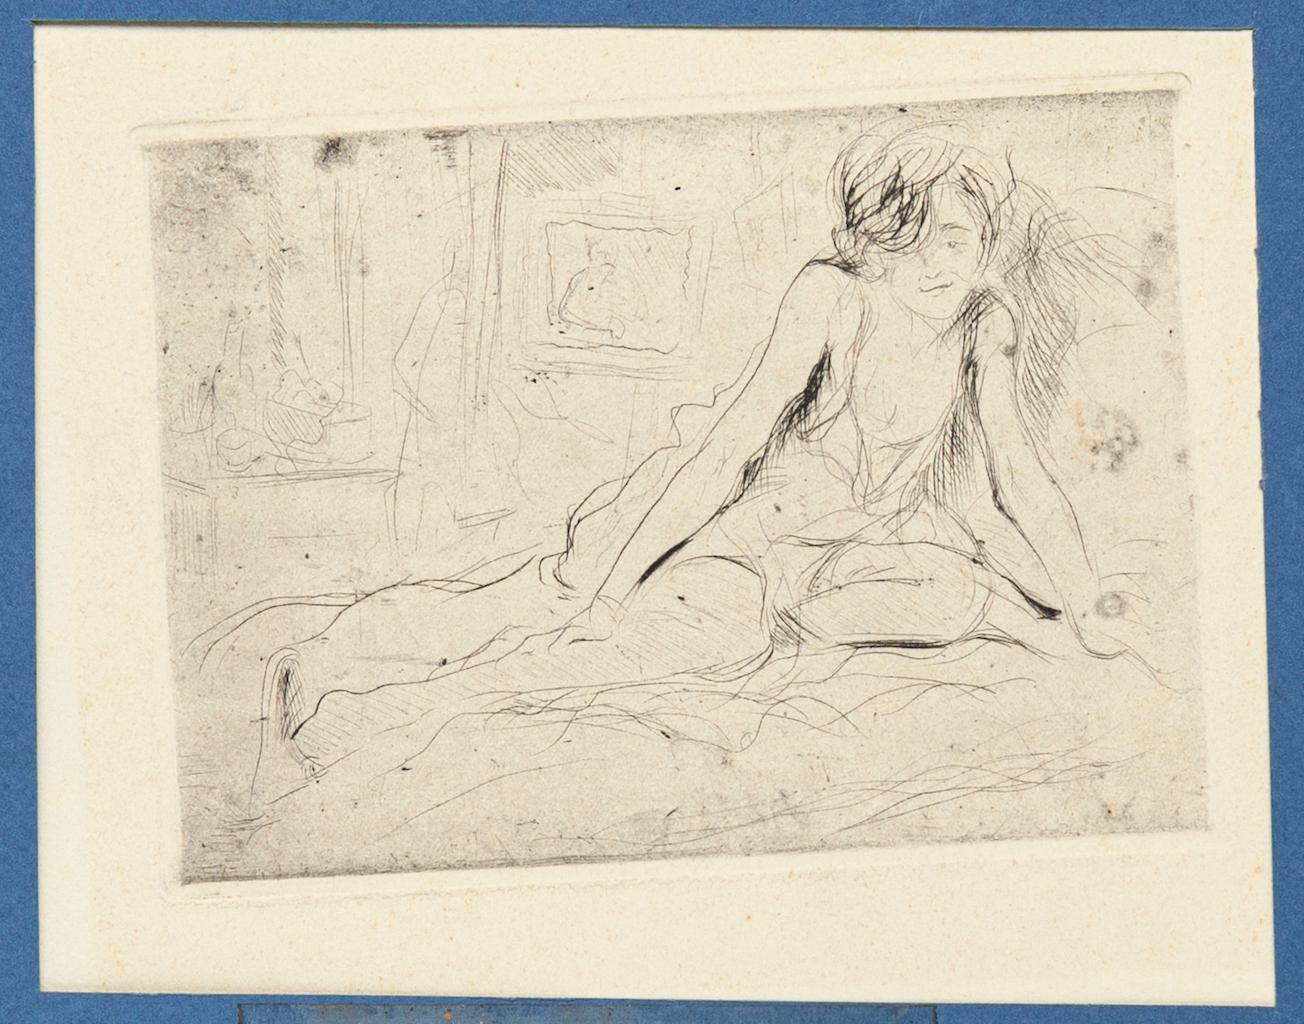 Akt ist eine Radierung auf Papier realisiert von Joseph Darche (1846 - 1906)

Der Erhaltungszustand ist sehr gut.

Enthält ein weißes Passepartout: 32.5 x 49.5  cm

Das Kunstwerk stellt eine schlafende Frau dar, die mit schnellen und sicheren